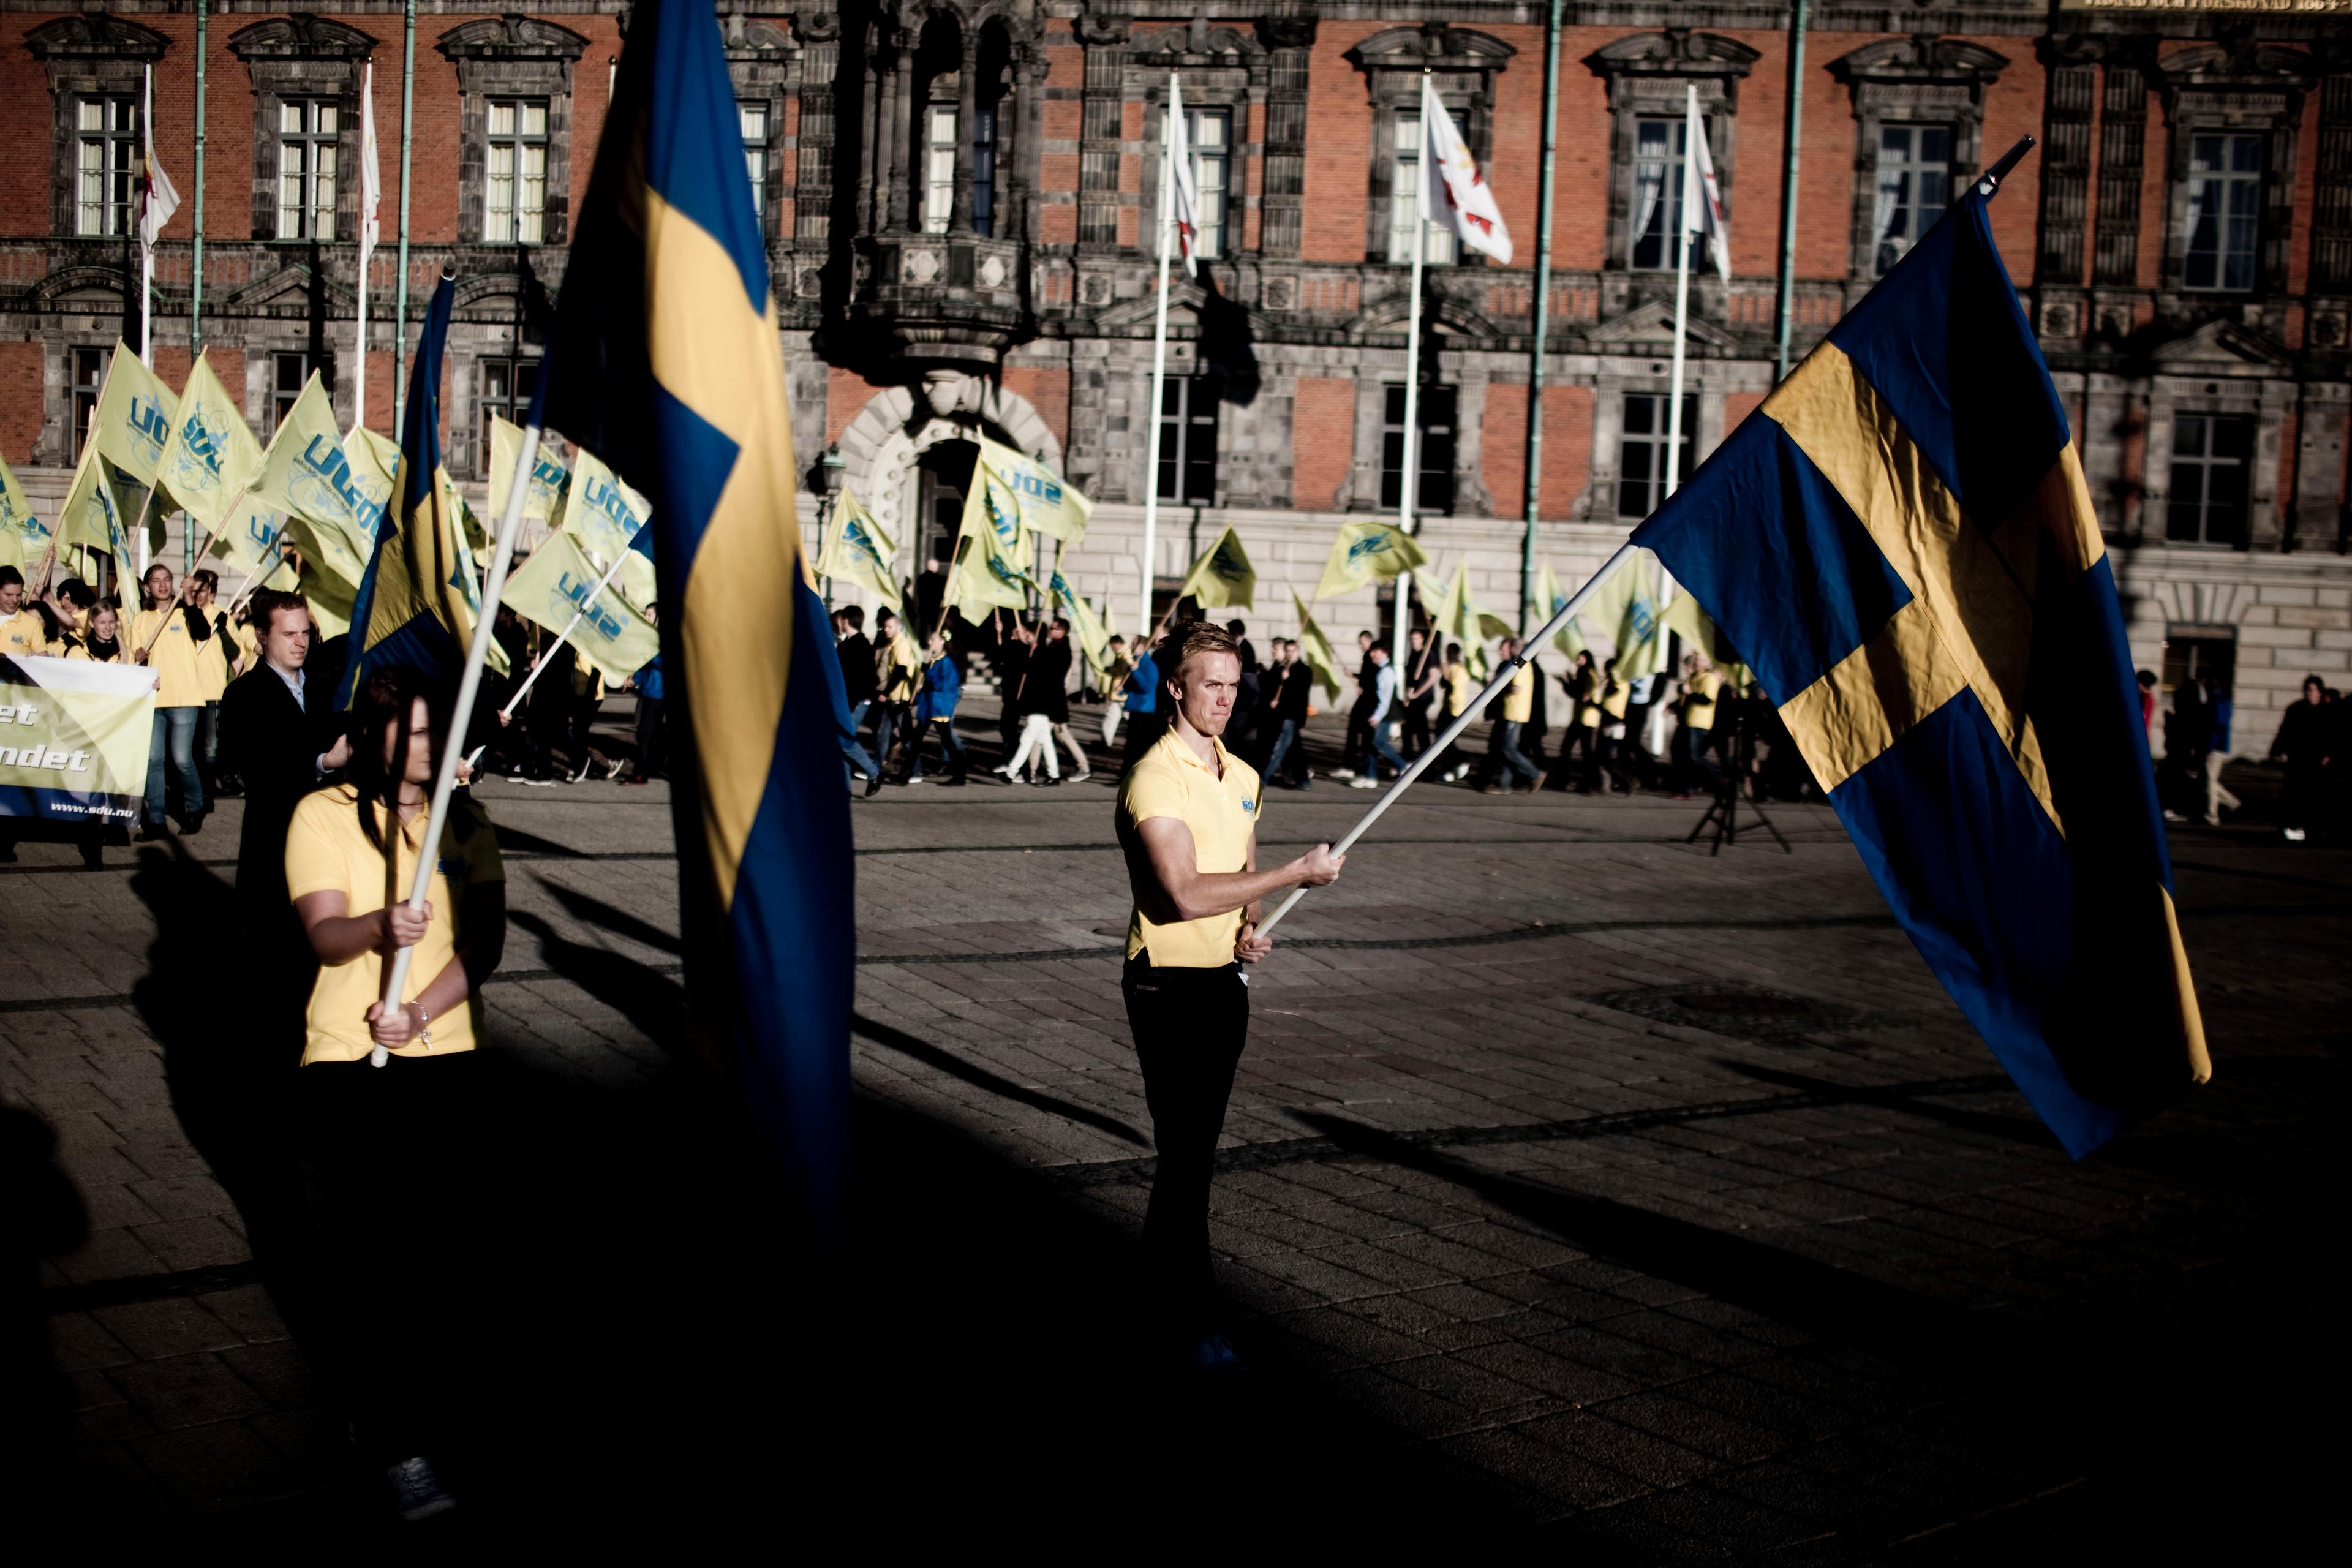 Sverigedemokraterna er et populistisk og indvandrerfjendsk parti uden reelt indhold, mener Lena Asplund, medlem af Riksdagen for Moderaterna. Ingen vil samarbejde med partiet, der fik 13 procent af stemmerne ved Riksdagsvalget forleden.  	Foto: Polfoto